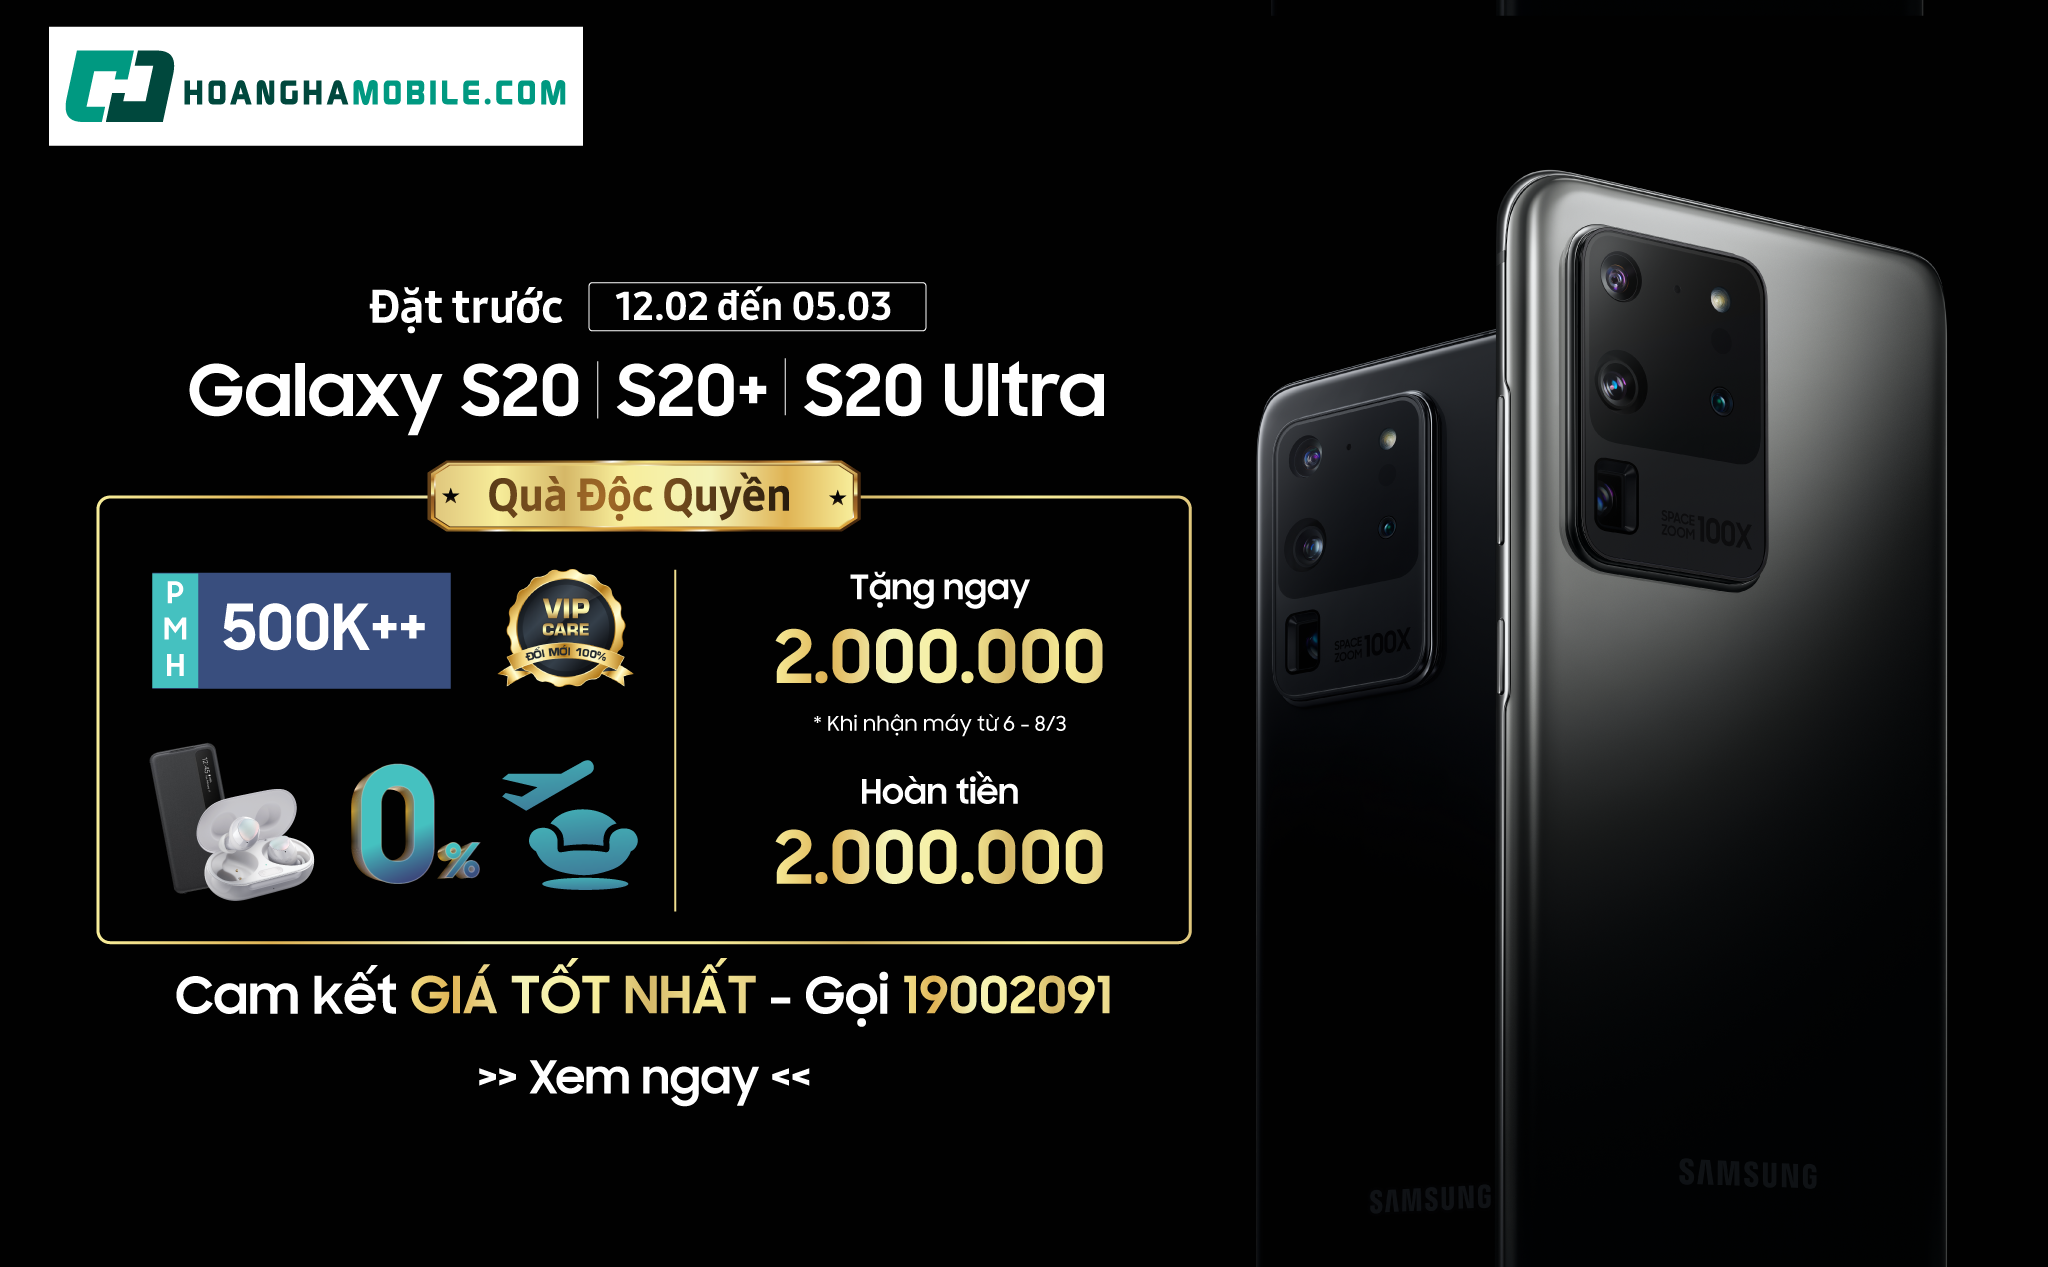 [QC] Đặt trước Galaxy S20 Series - Nhận siêu ưu đãi tới gần 10 triệu